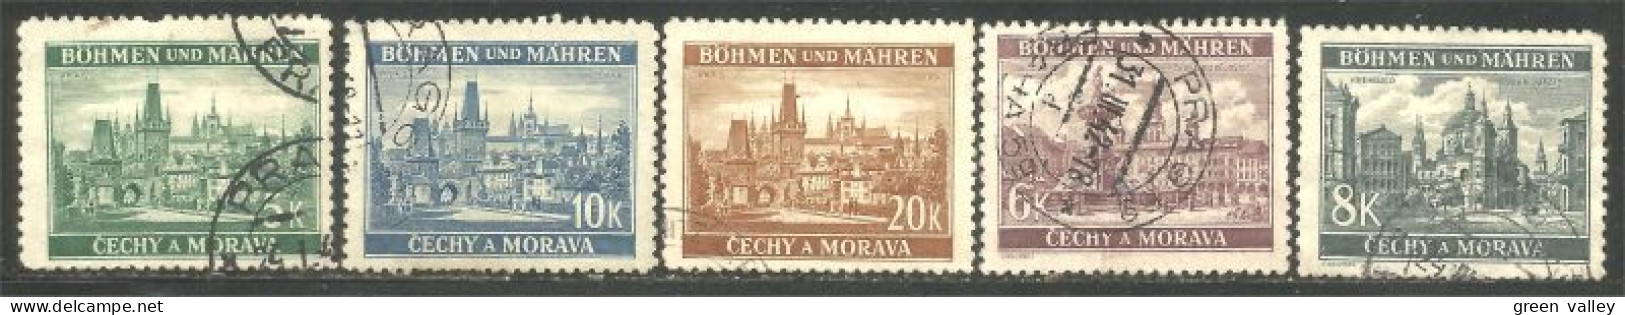 290 Bohmen Mahren Monuments 1939-40 (CZE-403) - Oblitérés